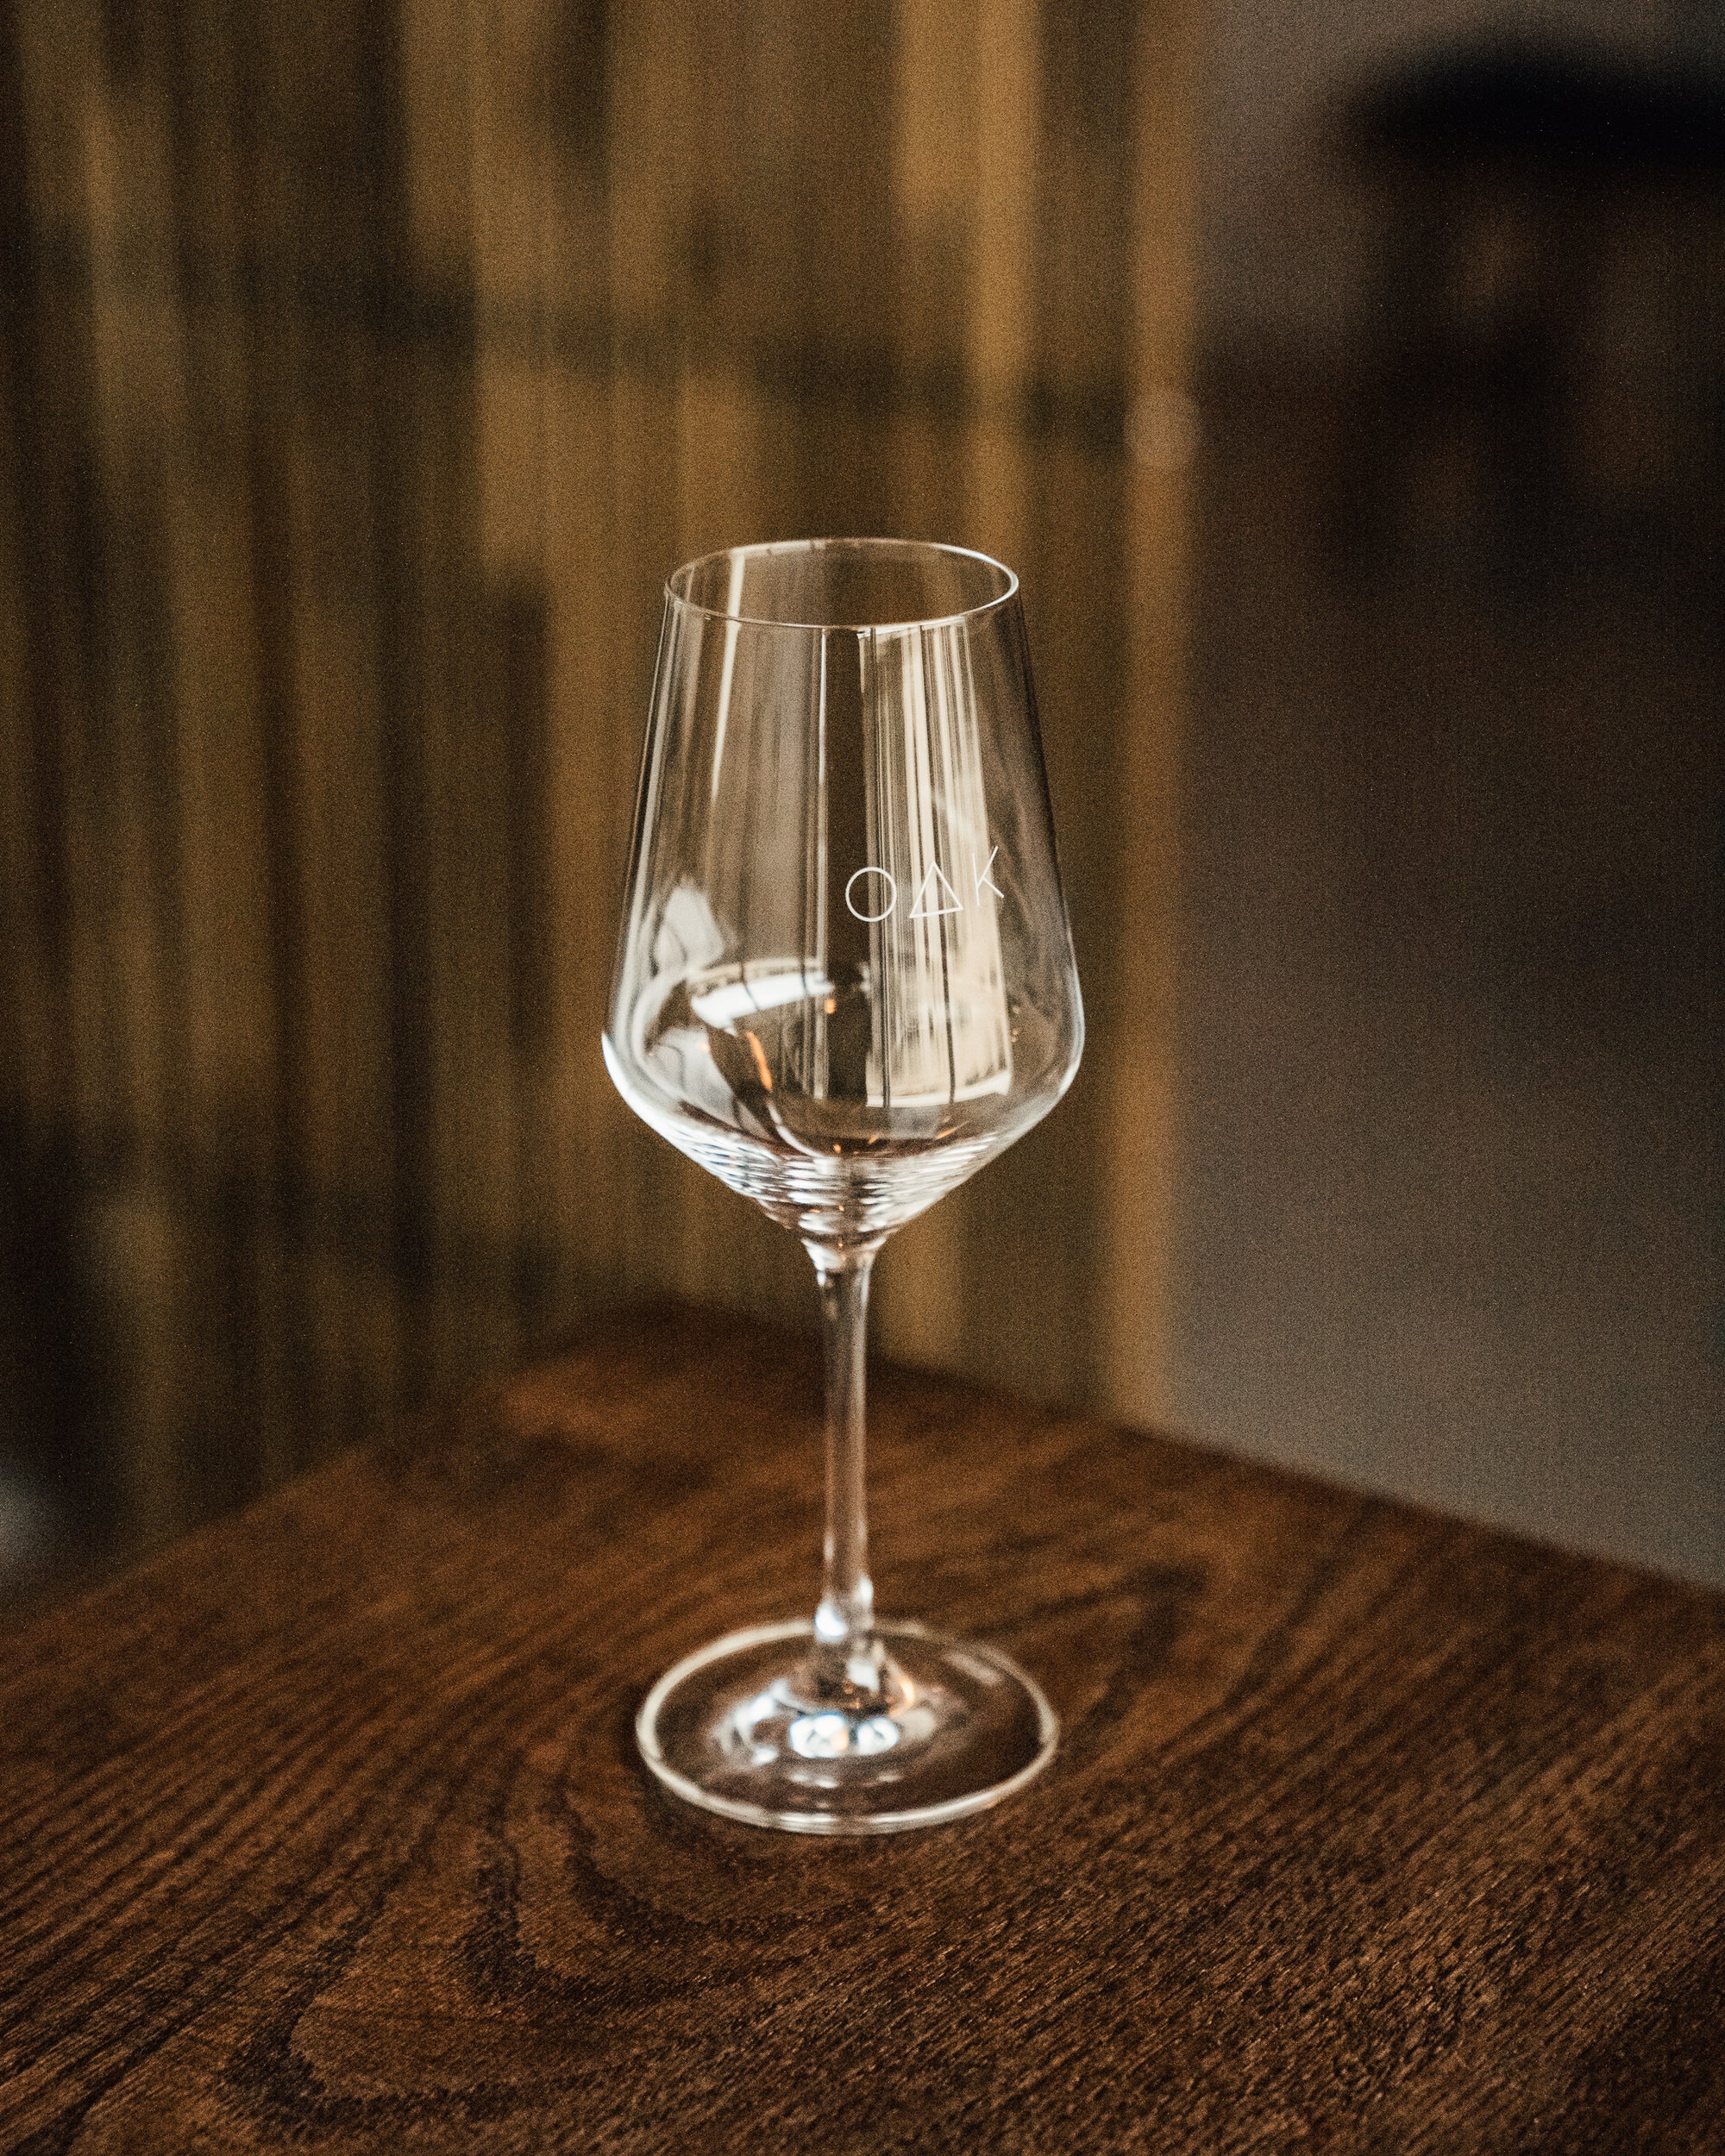 OAK Wine Glass